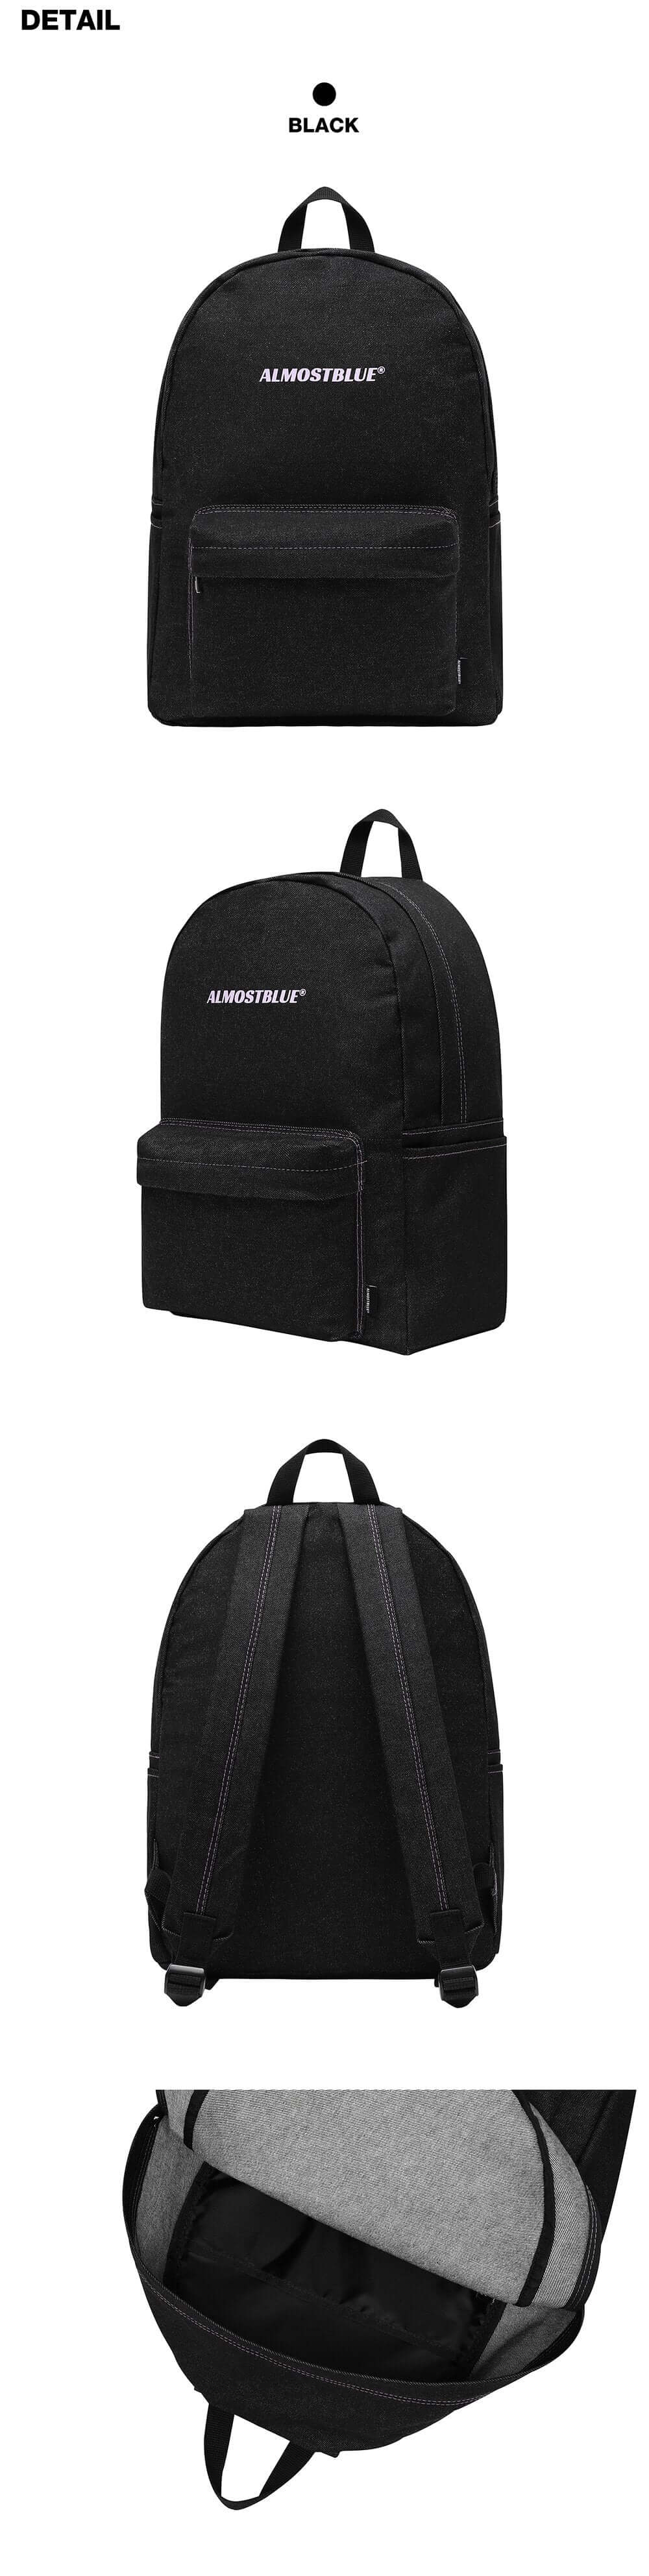 ALMOSTBLUE Denim Backpack details